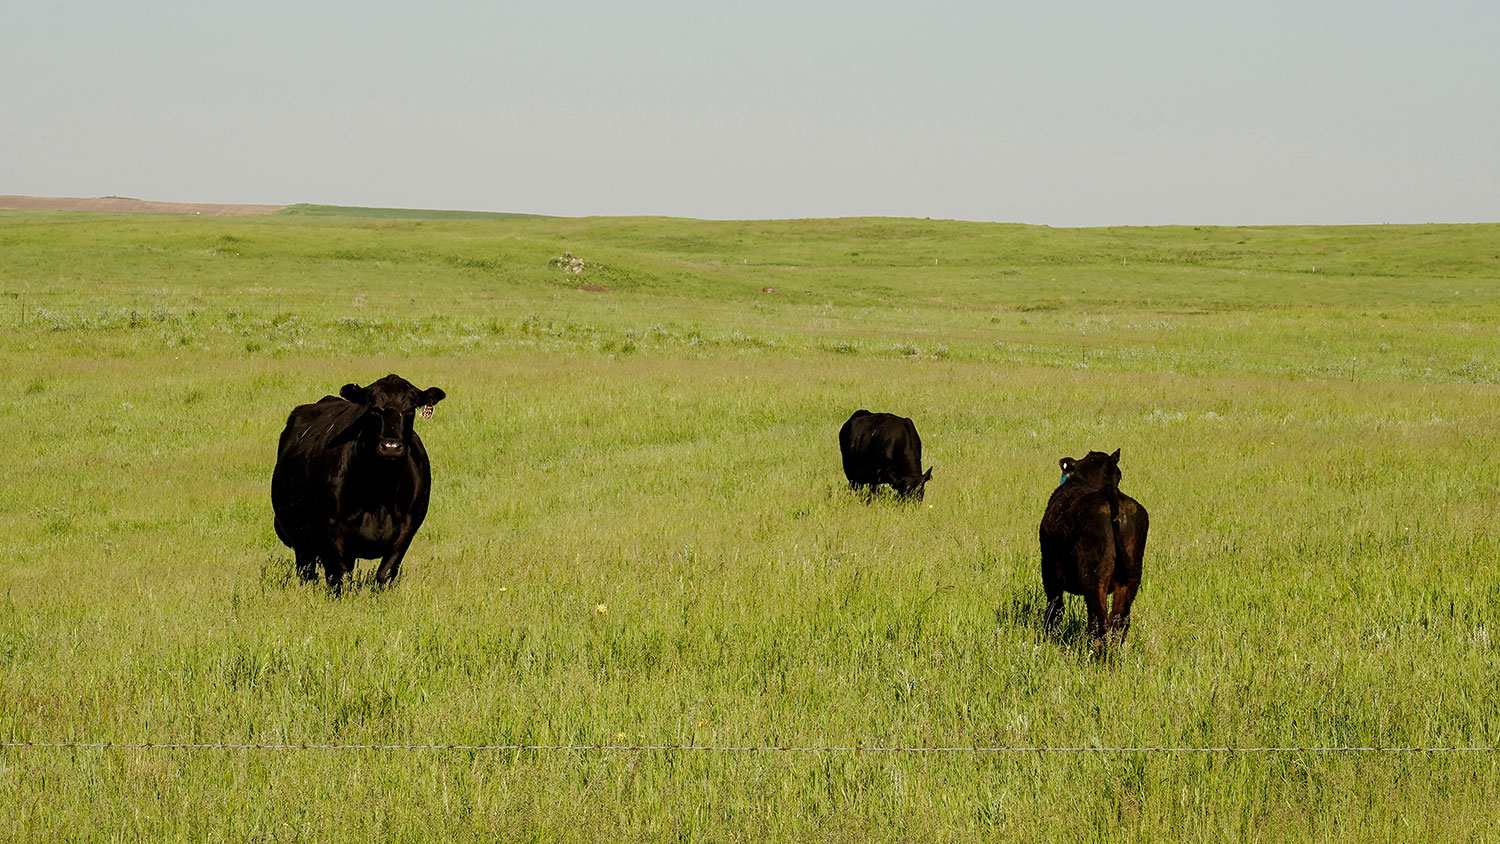 Cattle in a grassland